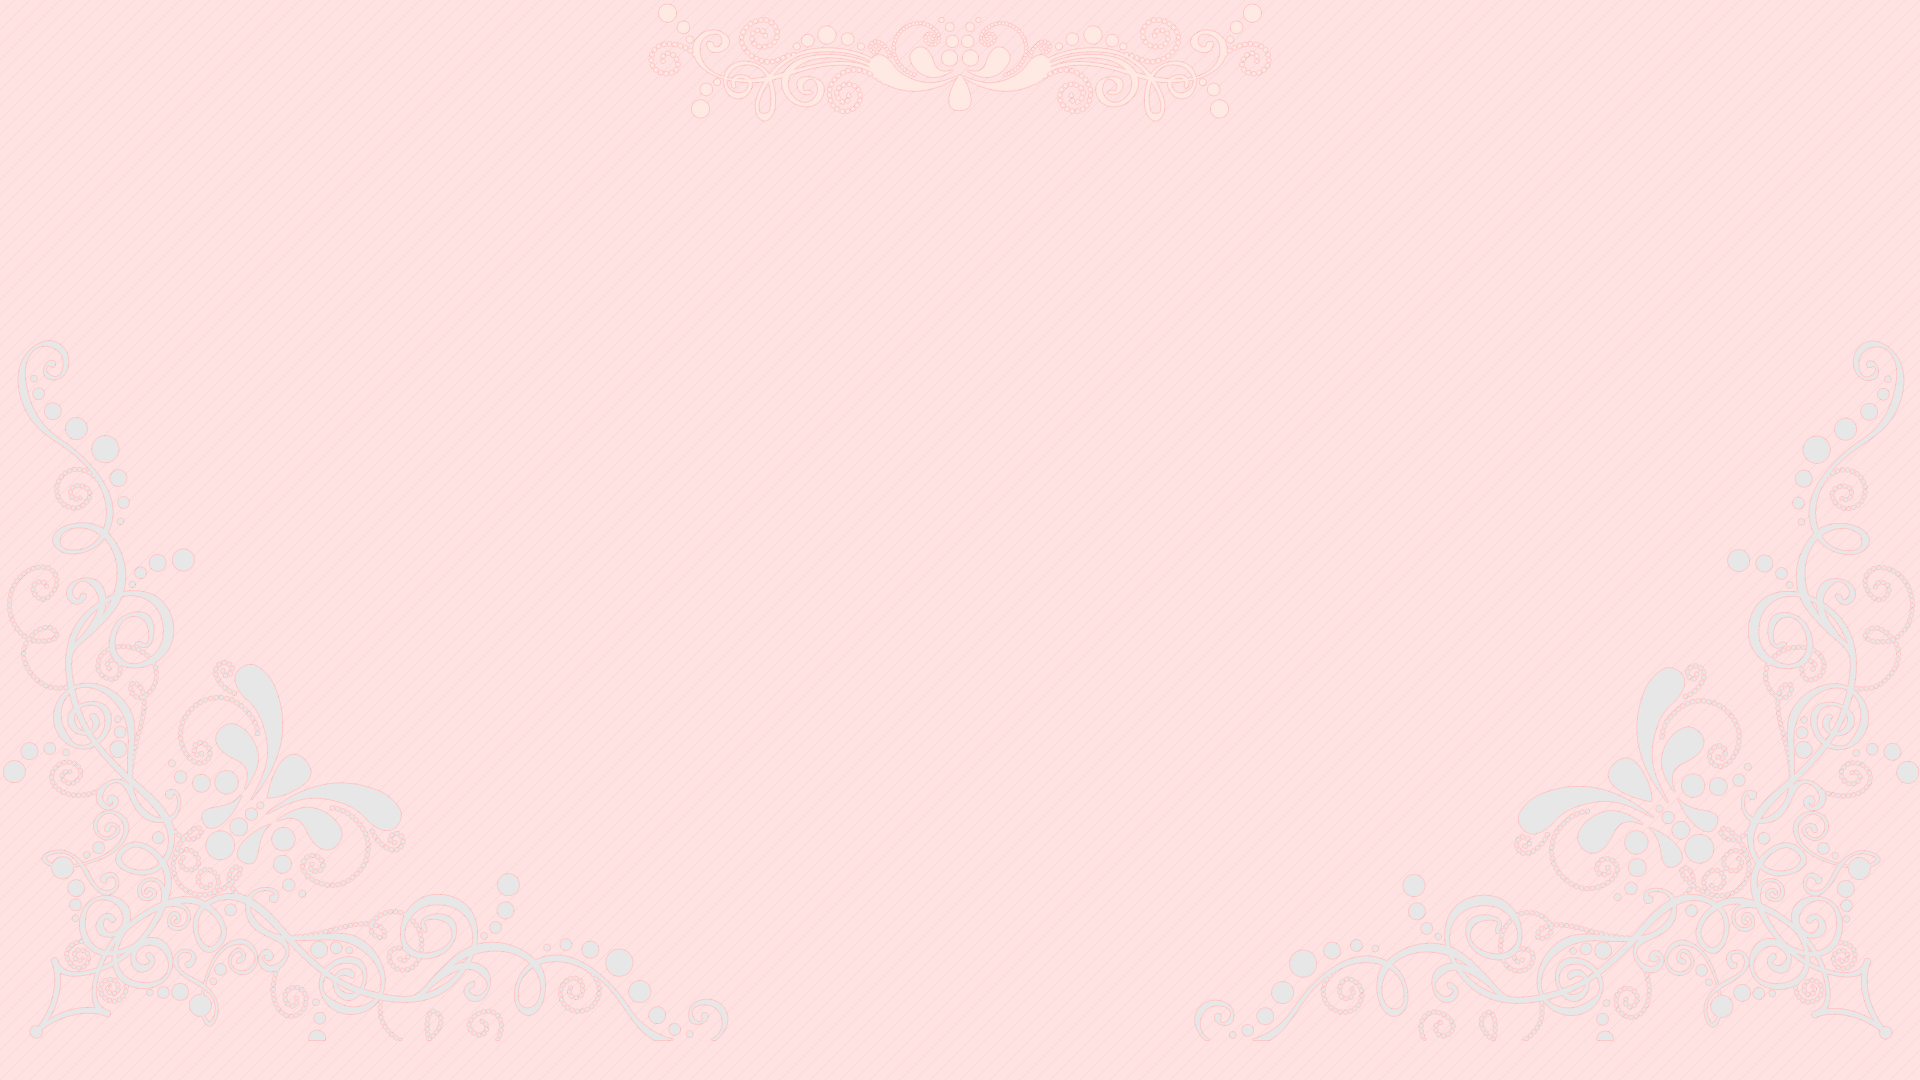 Pretty Pastel Pink Desktop Wallpaper 1920x1080 by cupcakekitten20 on